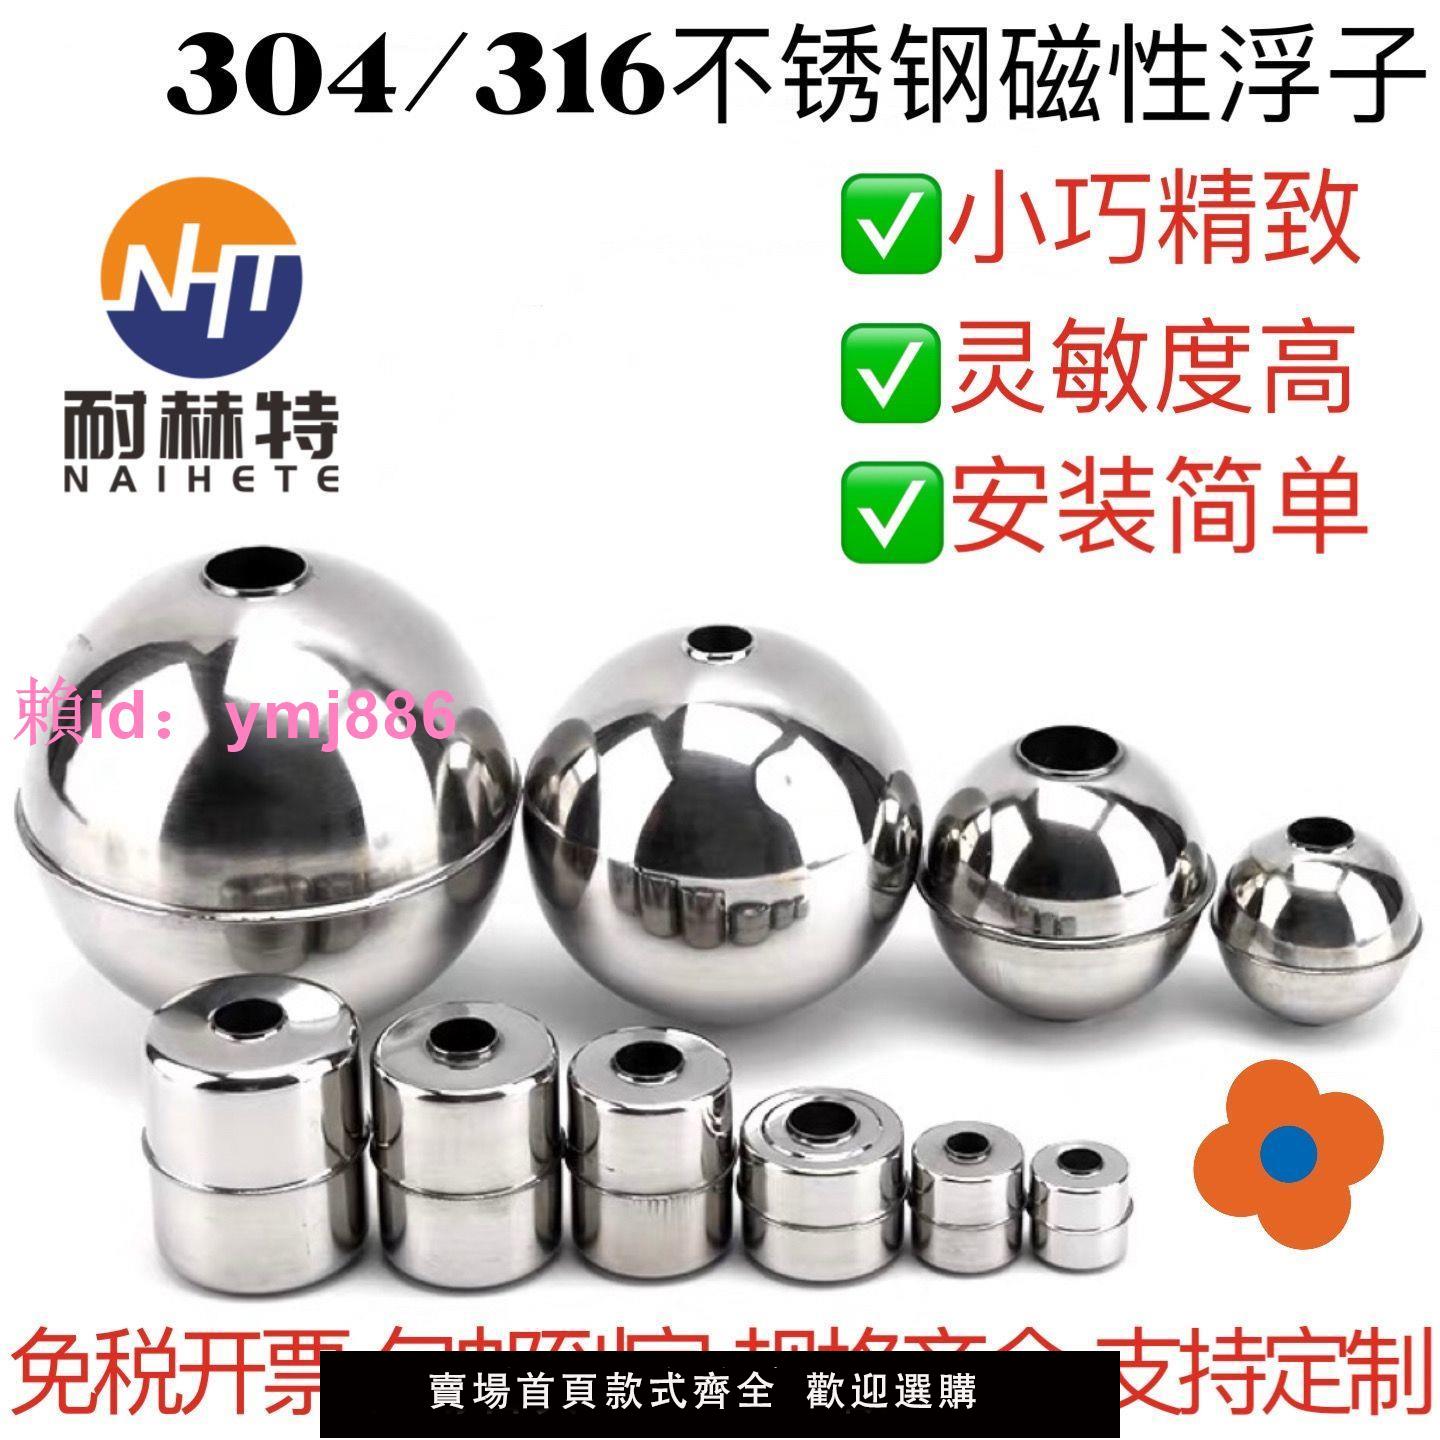 304316不銹鋼磁性浮子浮球小浮球配件球形空心球帶磁浮球可定制